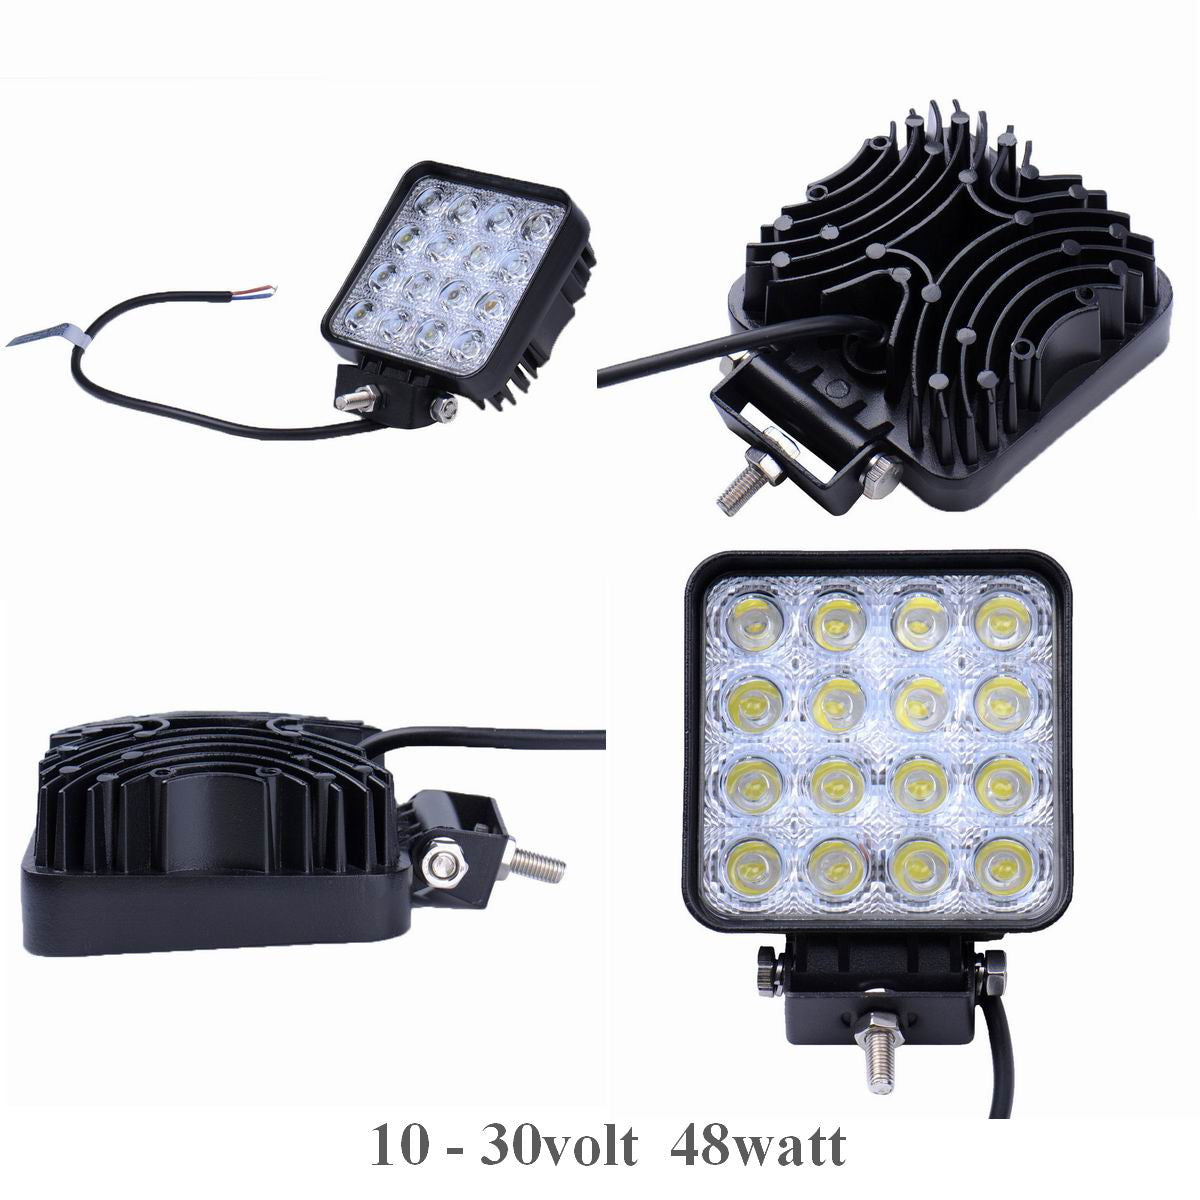 UDSALG - LED køretøjs projektør 48 watt 12/24 volt - Dinled - Køretøjs projektører